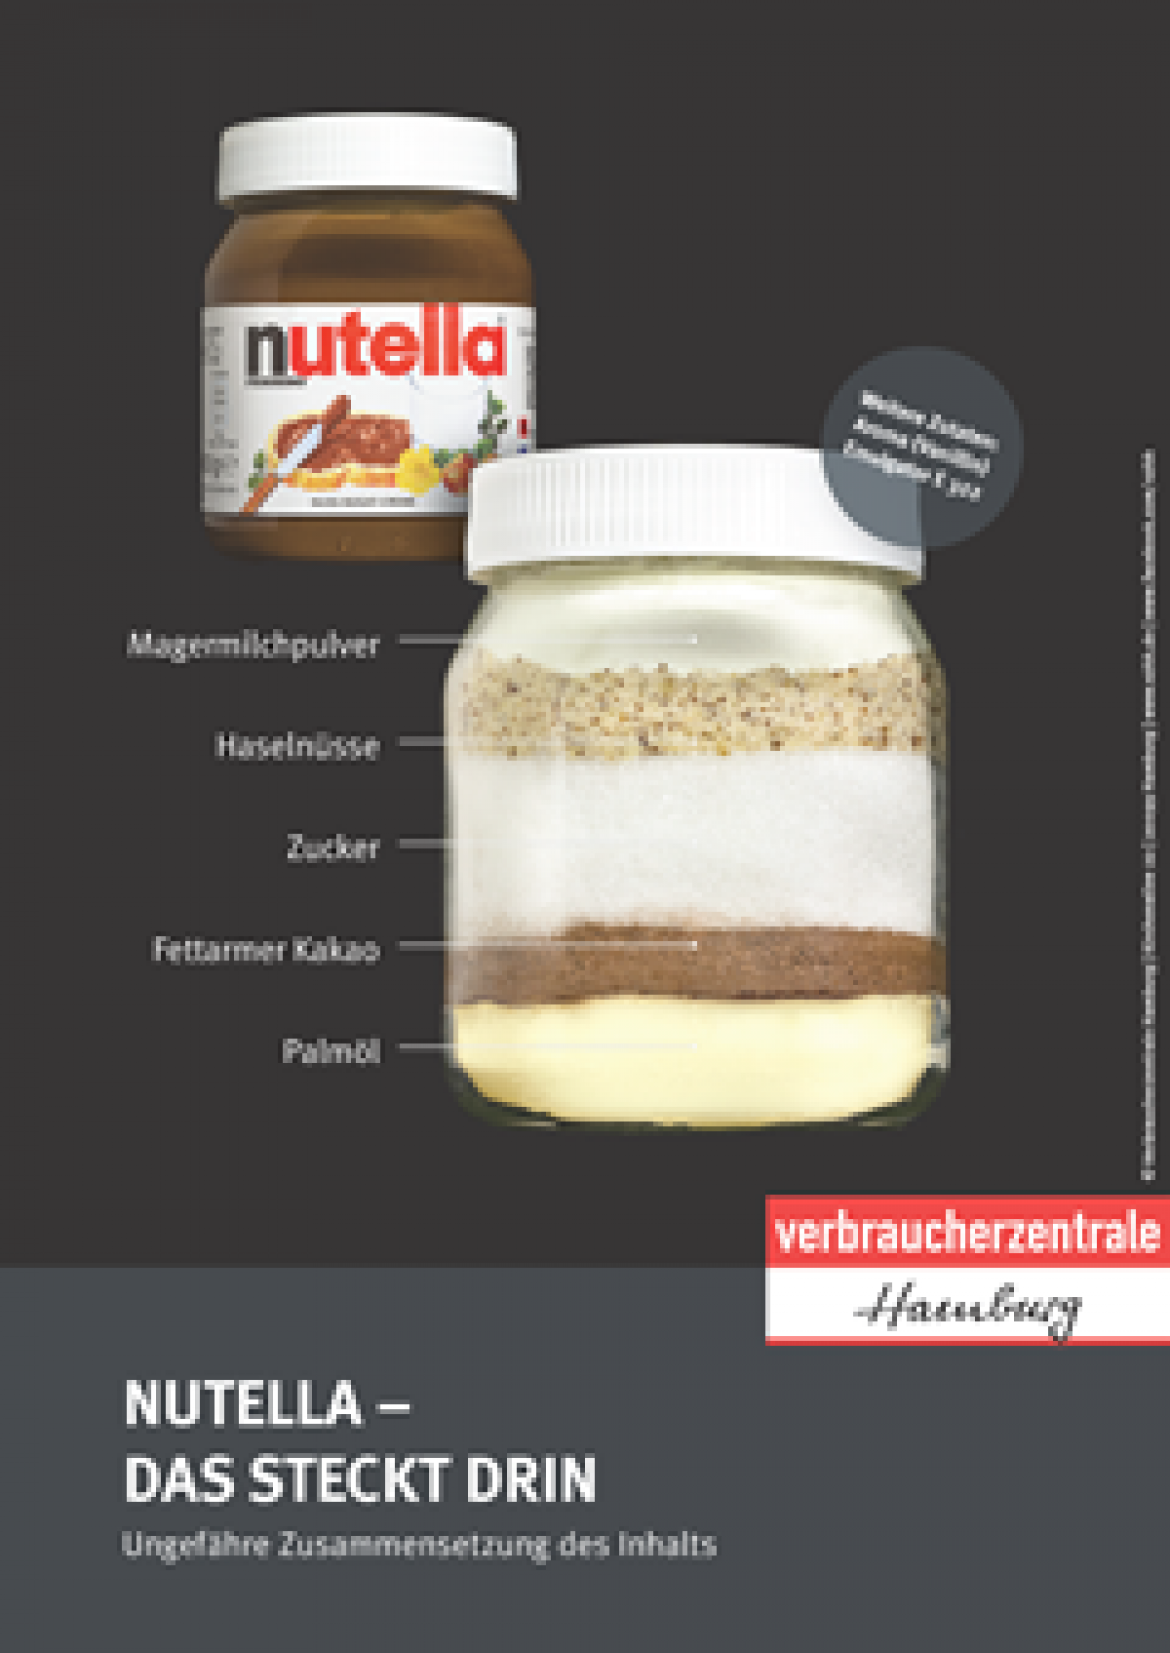 Nutella-Plakat mit Schichten der Inhaltsstoffe